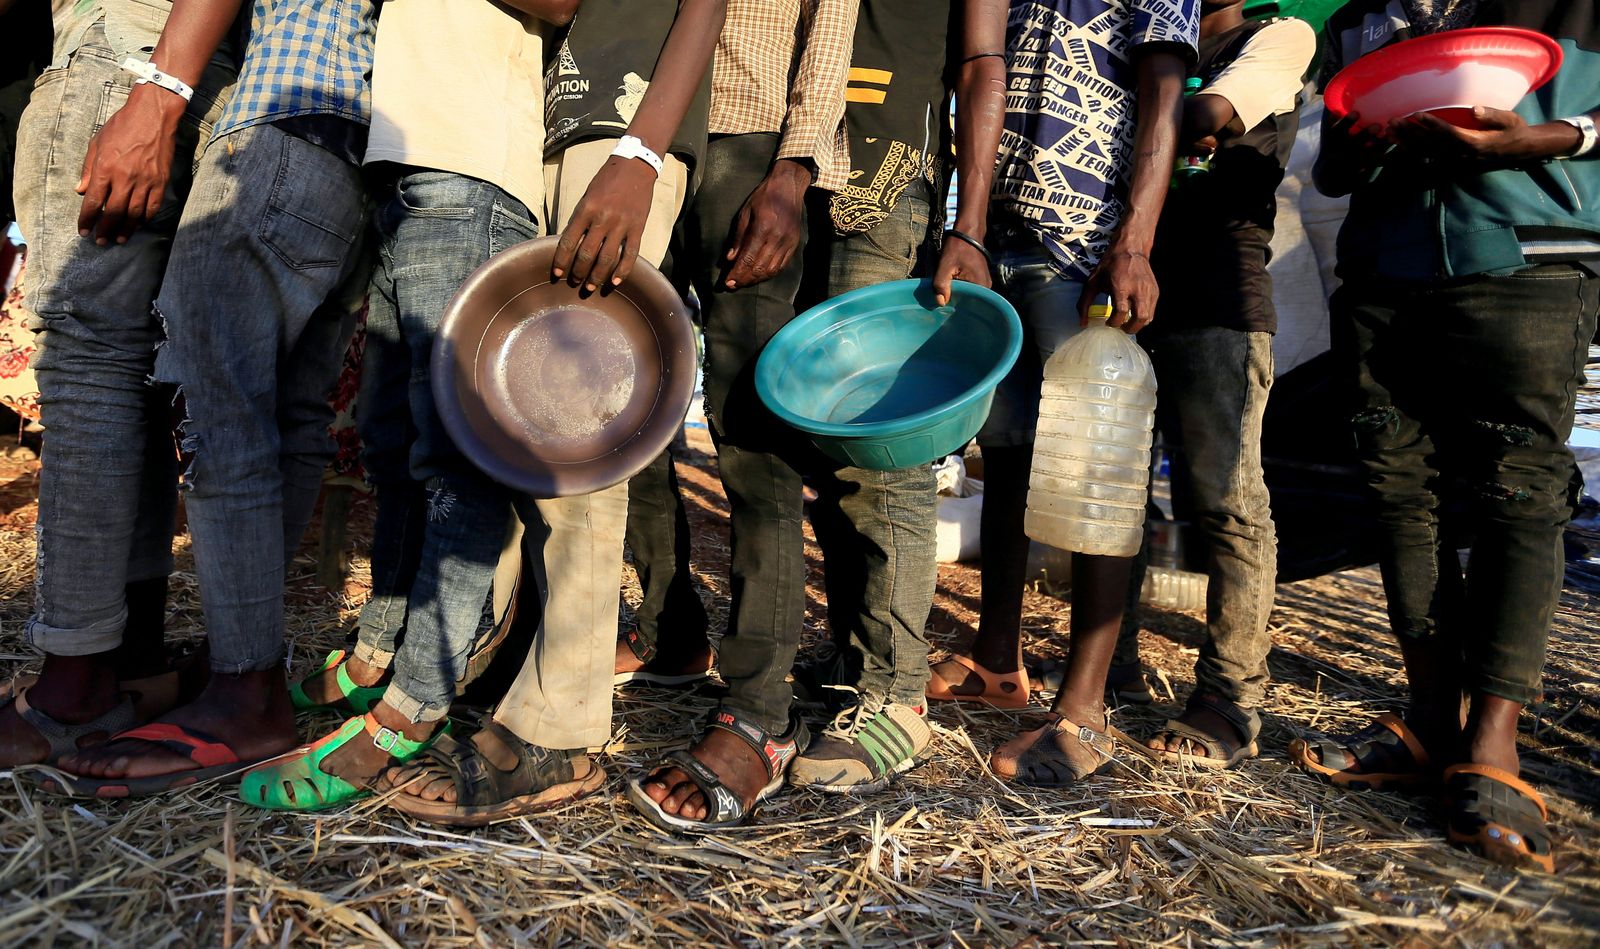 إثيوبيون فروا من منطقة تيغراي يقفون في طابور لتلقي المساعدات الغذائية داخل مخيم أم ركوبة على الحدود في السودان - REUTERS